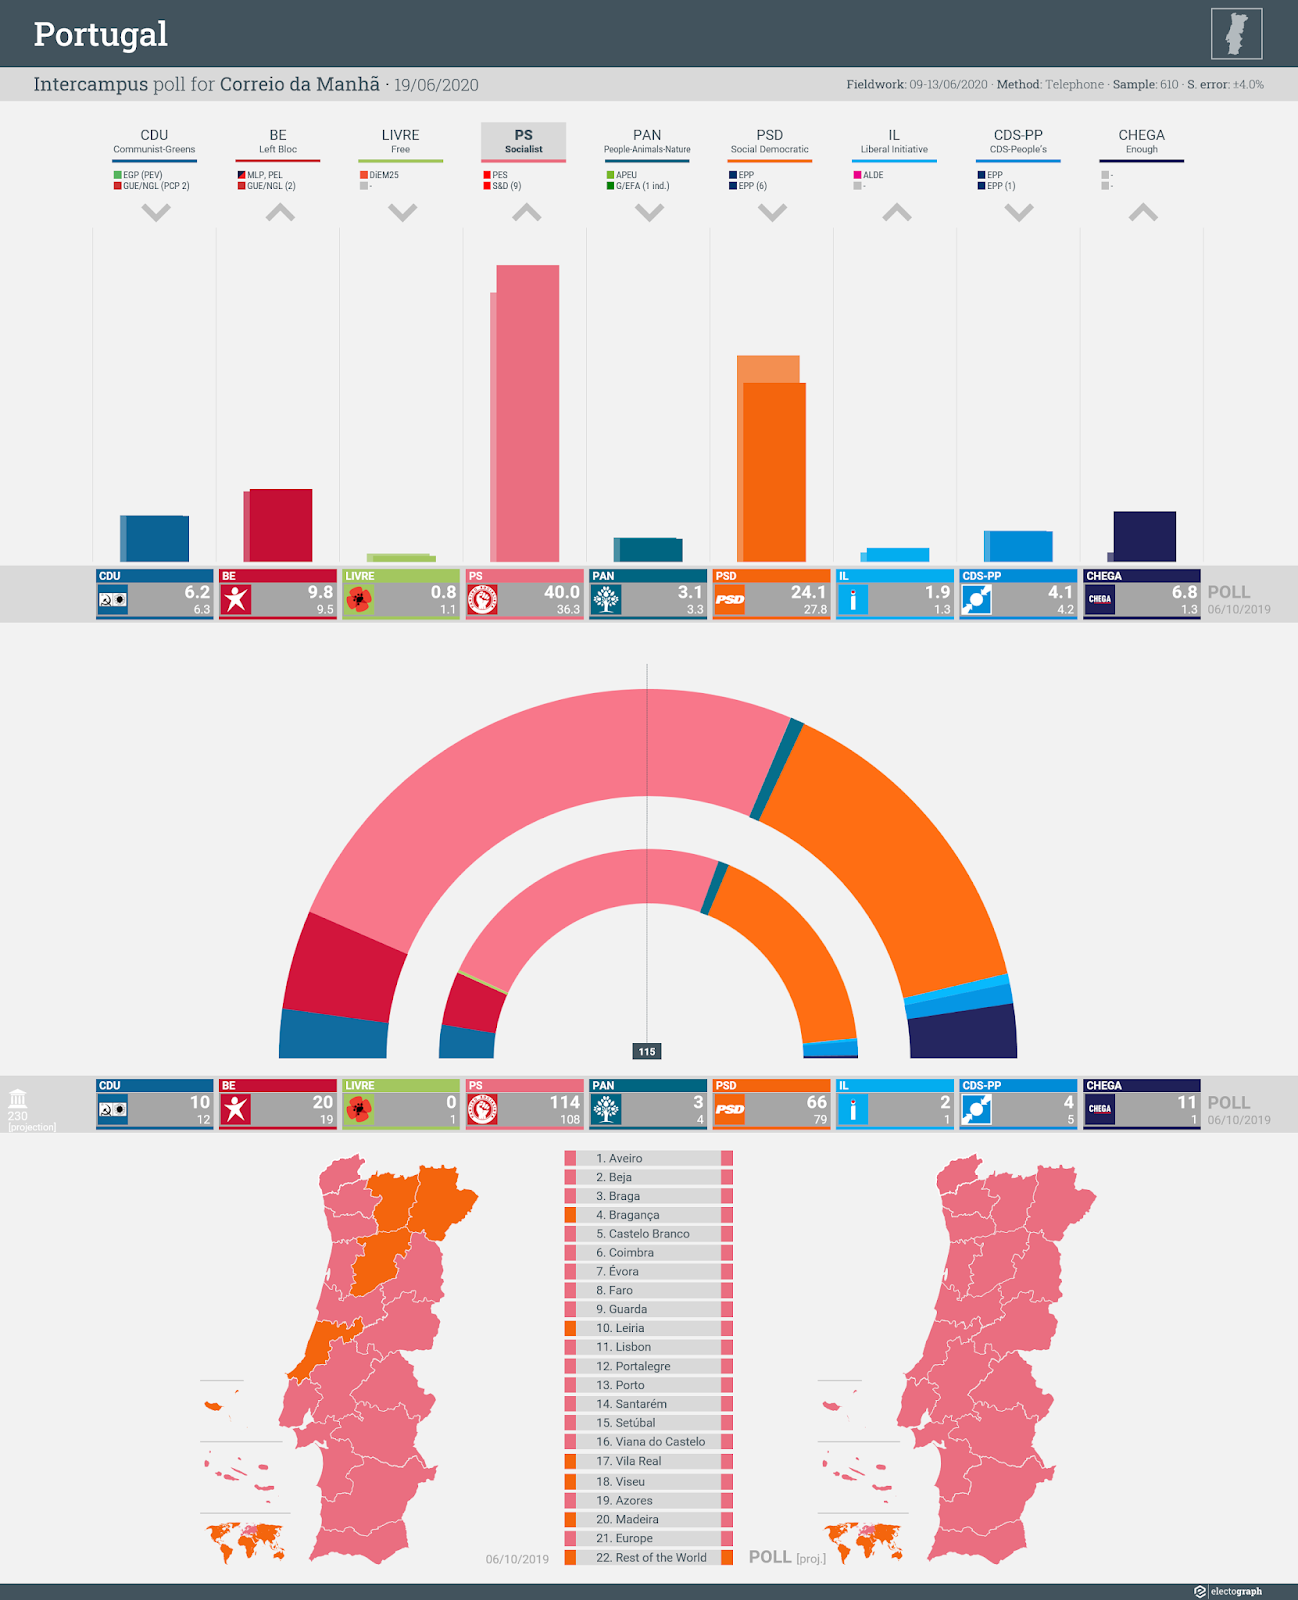 PORTUGAL: Intercampus poll chart for Correio da Manhã, 19 June 2020